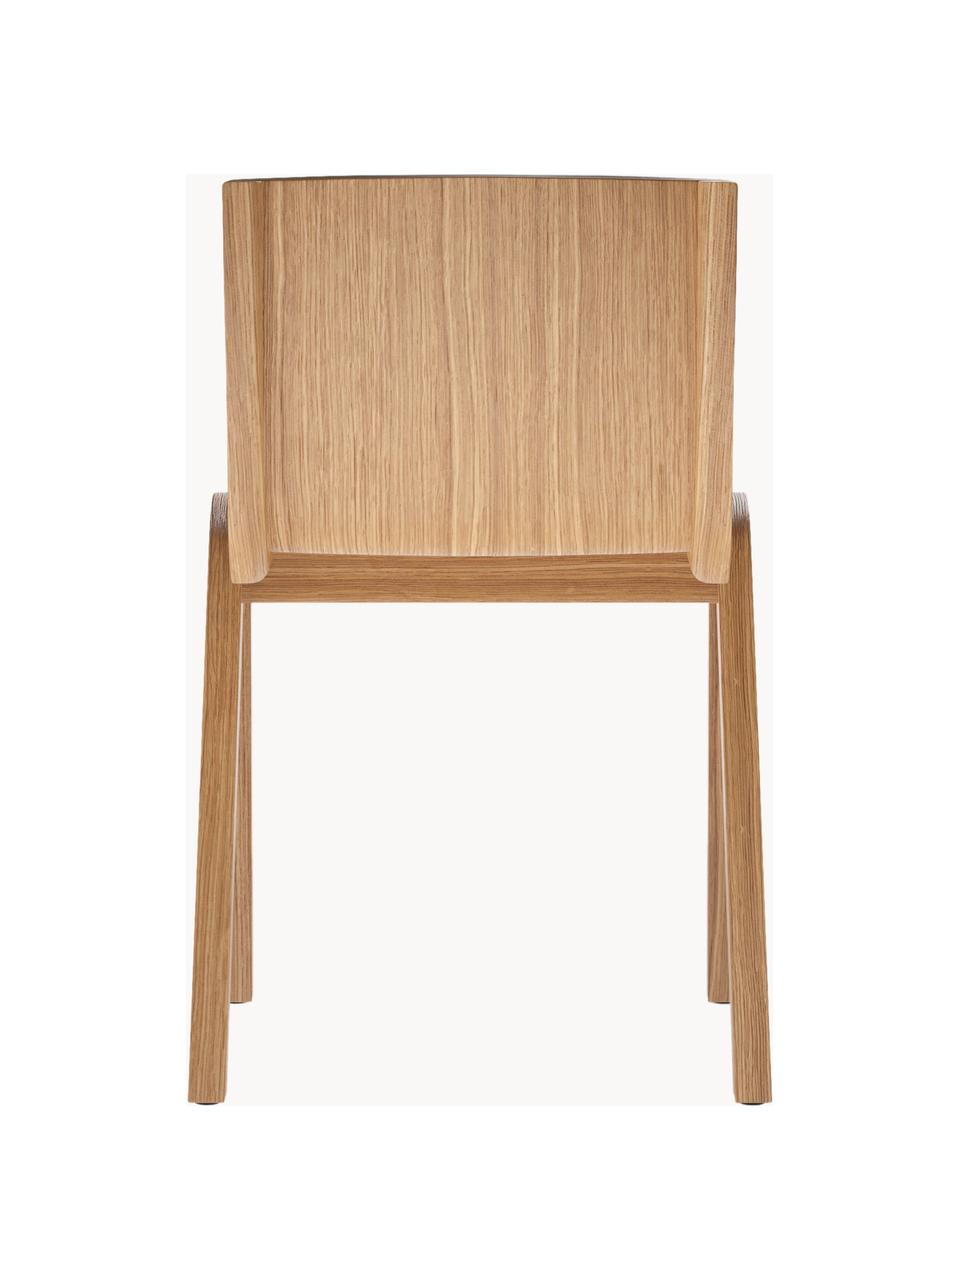 Jedálenská stolička z dubového dreva Ready, Dubové drevo, lakované, Dubové drevo, svetlé lakované, Š 47 x H 50 cm